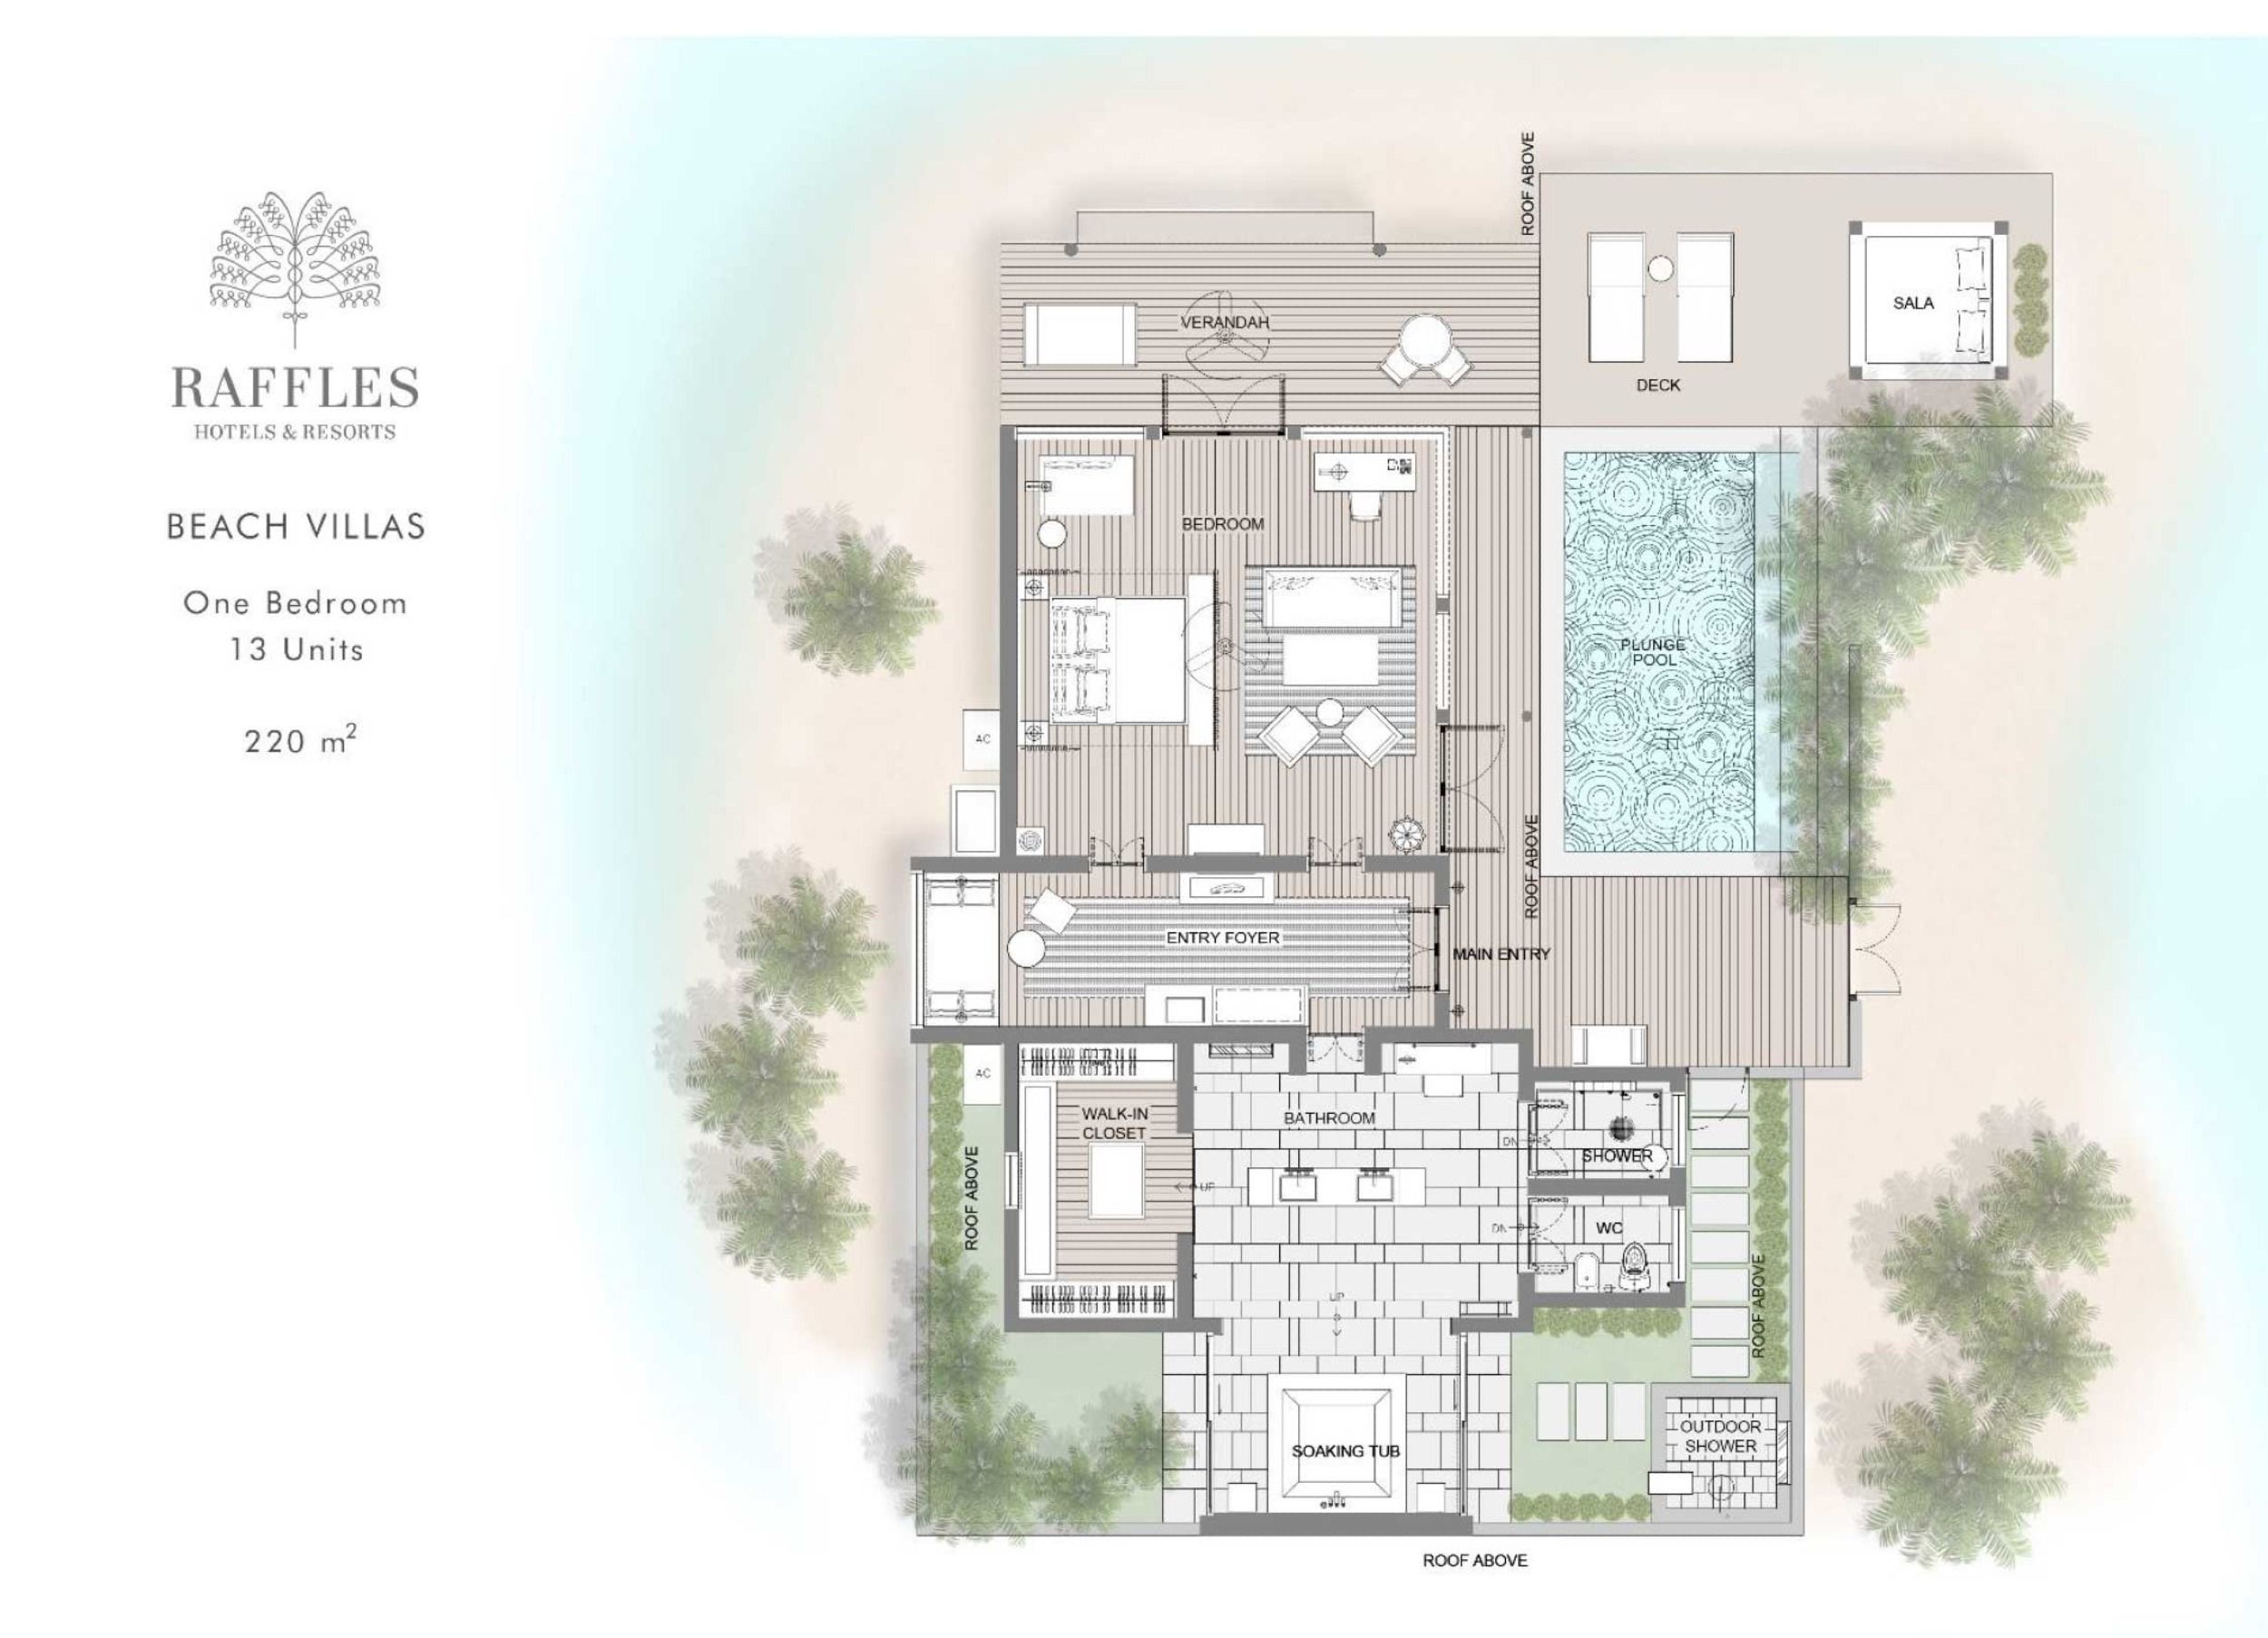 Raffles Maldives Beach Villa Floor Plan